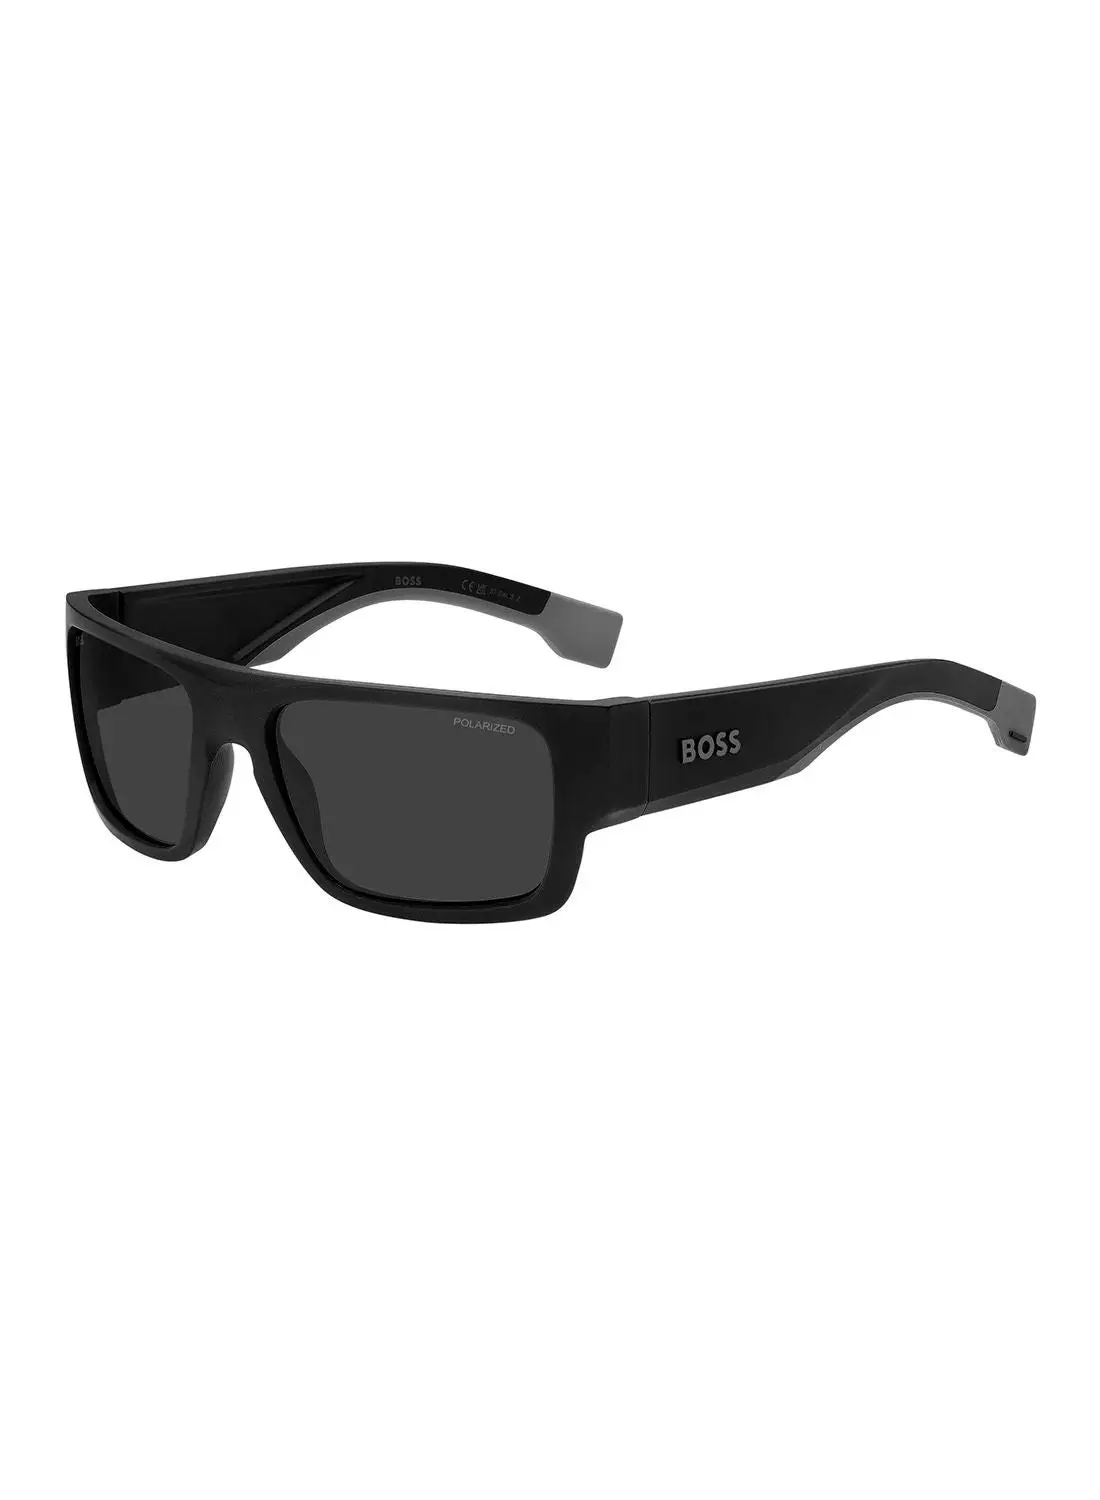 هيوغو بوس نظارة شمسية للرجال للحماية من الأشعة فوق البنفسجية - Boss 1498/S Mtbk Gray 58 - مقاس العدسة: 58 ملم